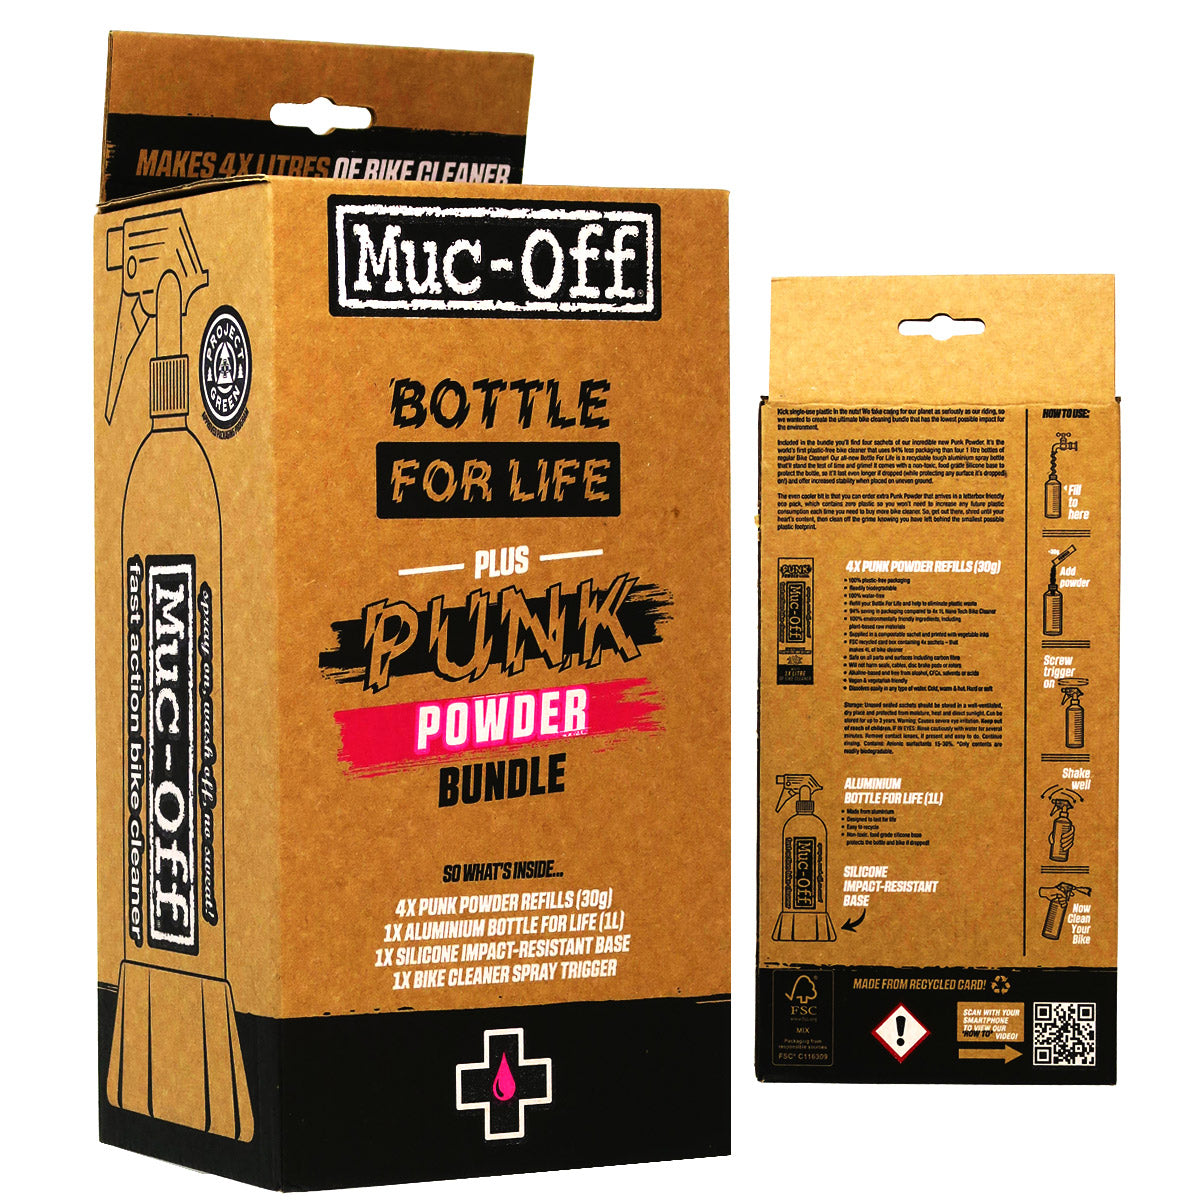 Muc-Off Bottle For Life Plus Punk Powder Bundle - 4 Pack